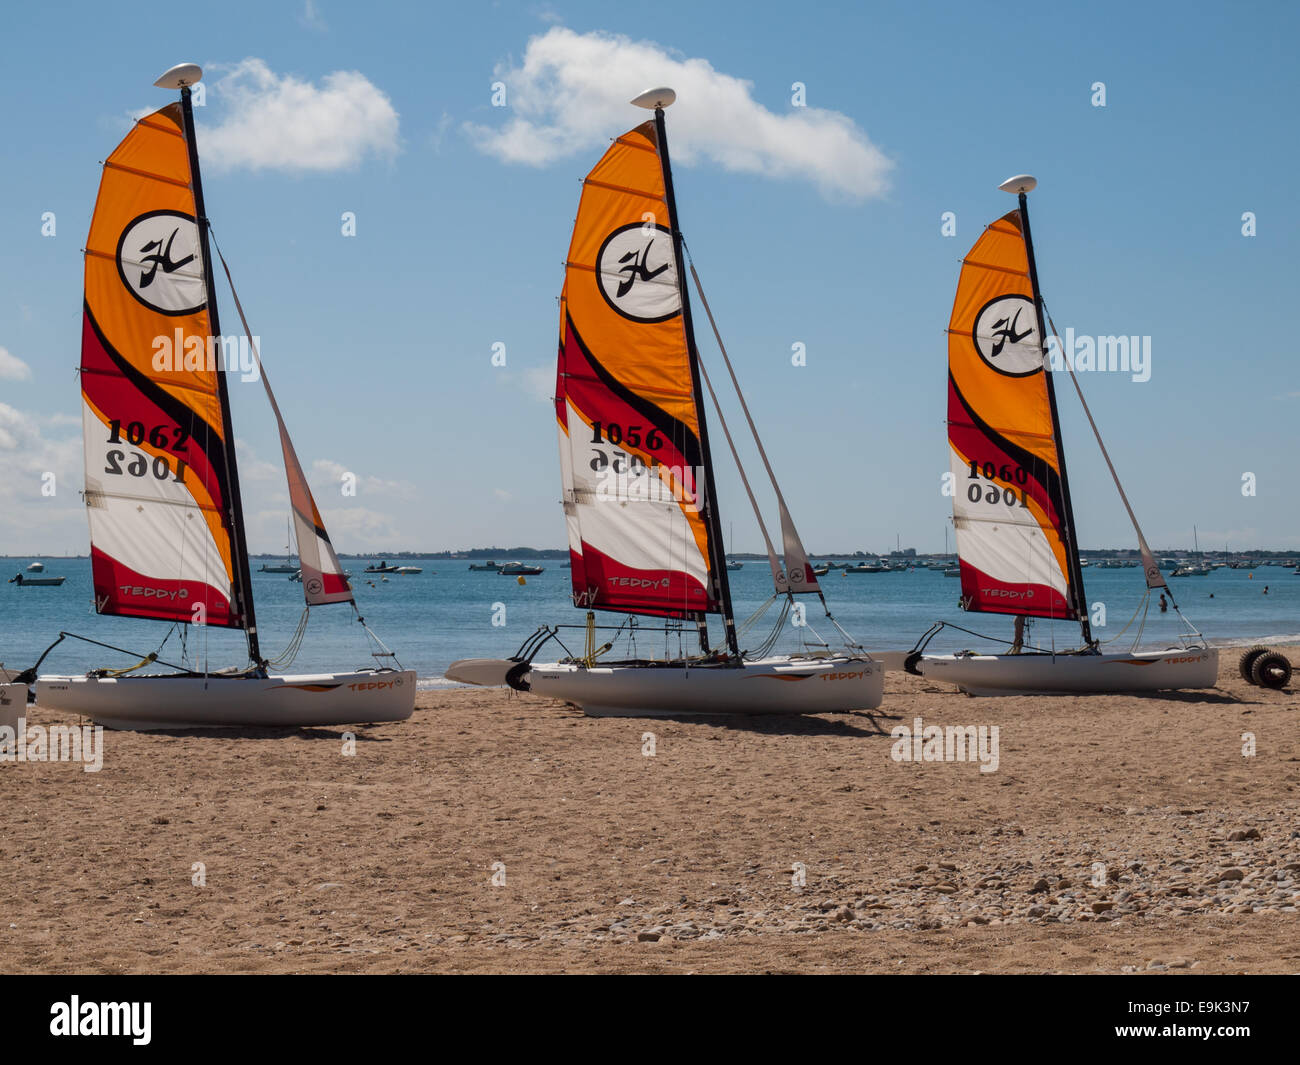 small catermarans with sails raised on the beach plage des dames, Noirmoutier-en-l'Île, noirmoutier Stock Photo